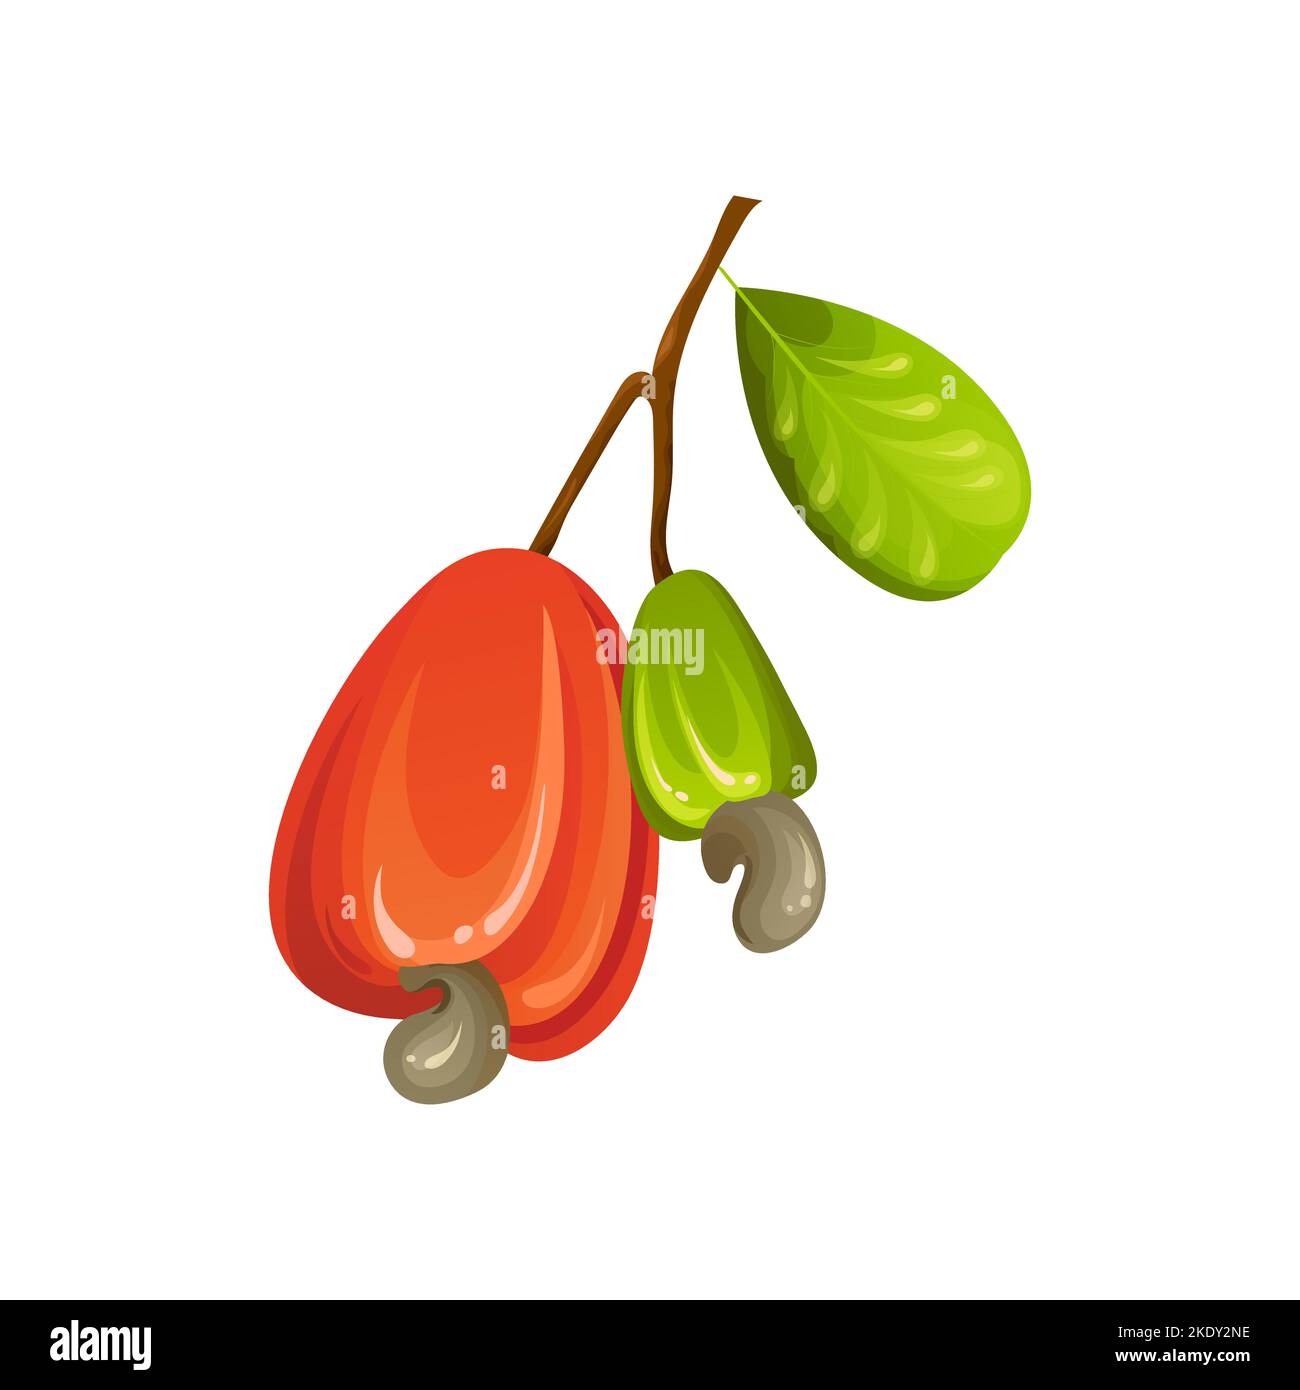 Noix de cajou rouge. Fruits jaunes exotiques mûrs et mûrs avec feuilles vertes. Illustration vectorielle de dessin animé Illustration de Vecteur